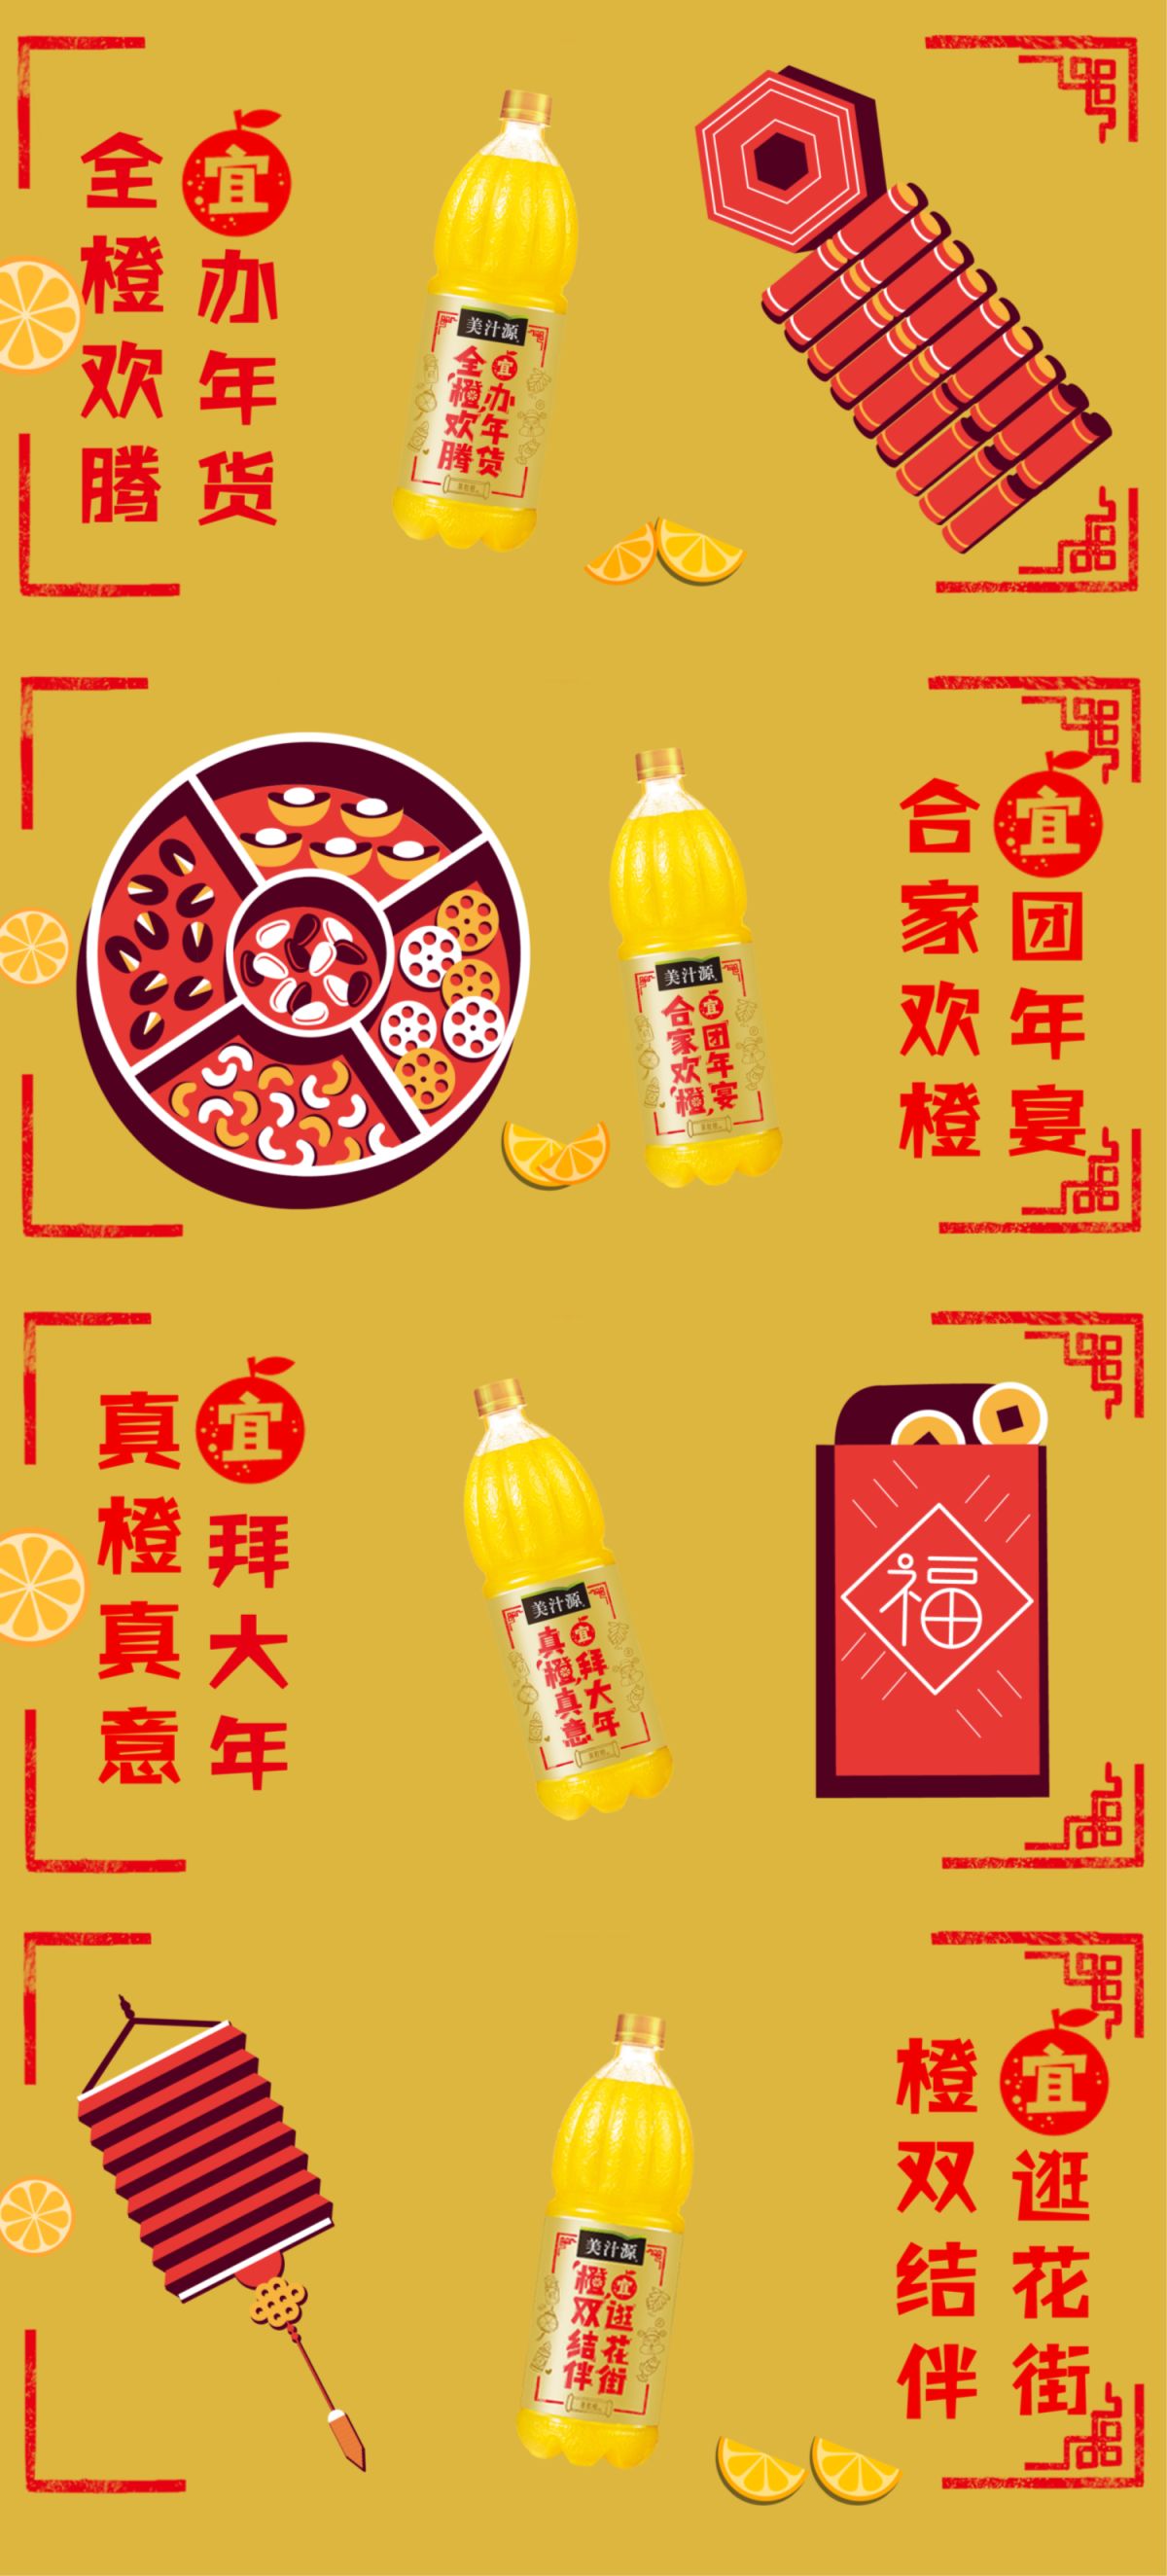 美汁源福字图片,美汁源新品